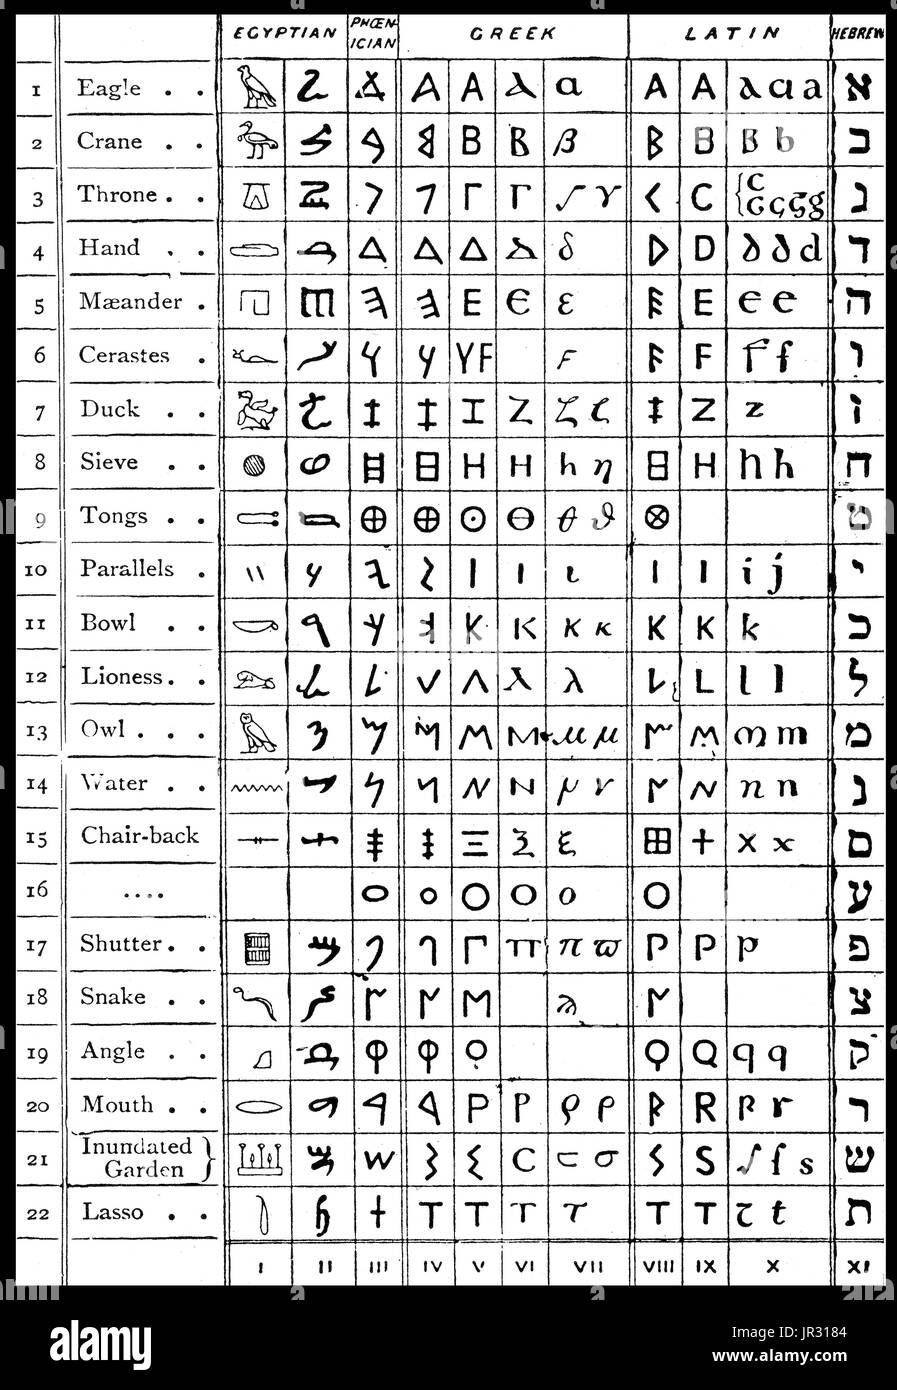 Un pittogramma è un ideogramma che convoglia il suo significato attraverso la sua somiglianza pittorica di un oggetto fisico. Geroglifici egiziani sono stati la scrittura formale sistema utilizzato nell'Antico Egitto. Esso logographic combinato, sillabiche e elementi in ordine alfabetico, con un totale di circa 1.000 caratteri distinti. L'alfabeto fenicio, chiamato per convenzione il Proto-Canaanite alfabeto per iscrizioni di età superiore a circa 1050 BC, è il più antico alfabeto verificati. L'alfabeto Fenicio è derivata da geroglifici egiziani. L'alfabeto greco è stato utilizzato per scrivere la lingua greca in quanto alla fine del IX secolo A.C. o ea Foto Stock